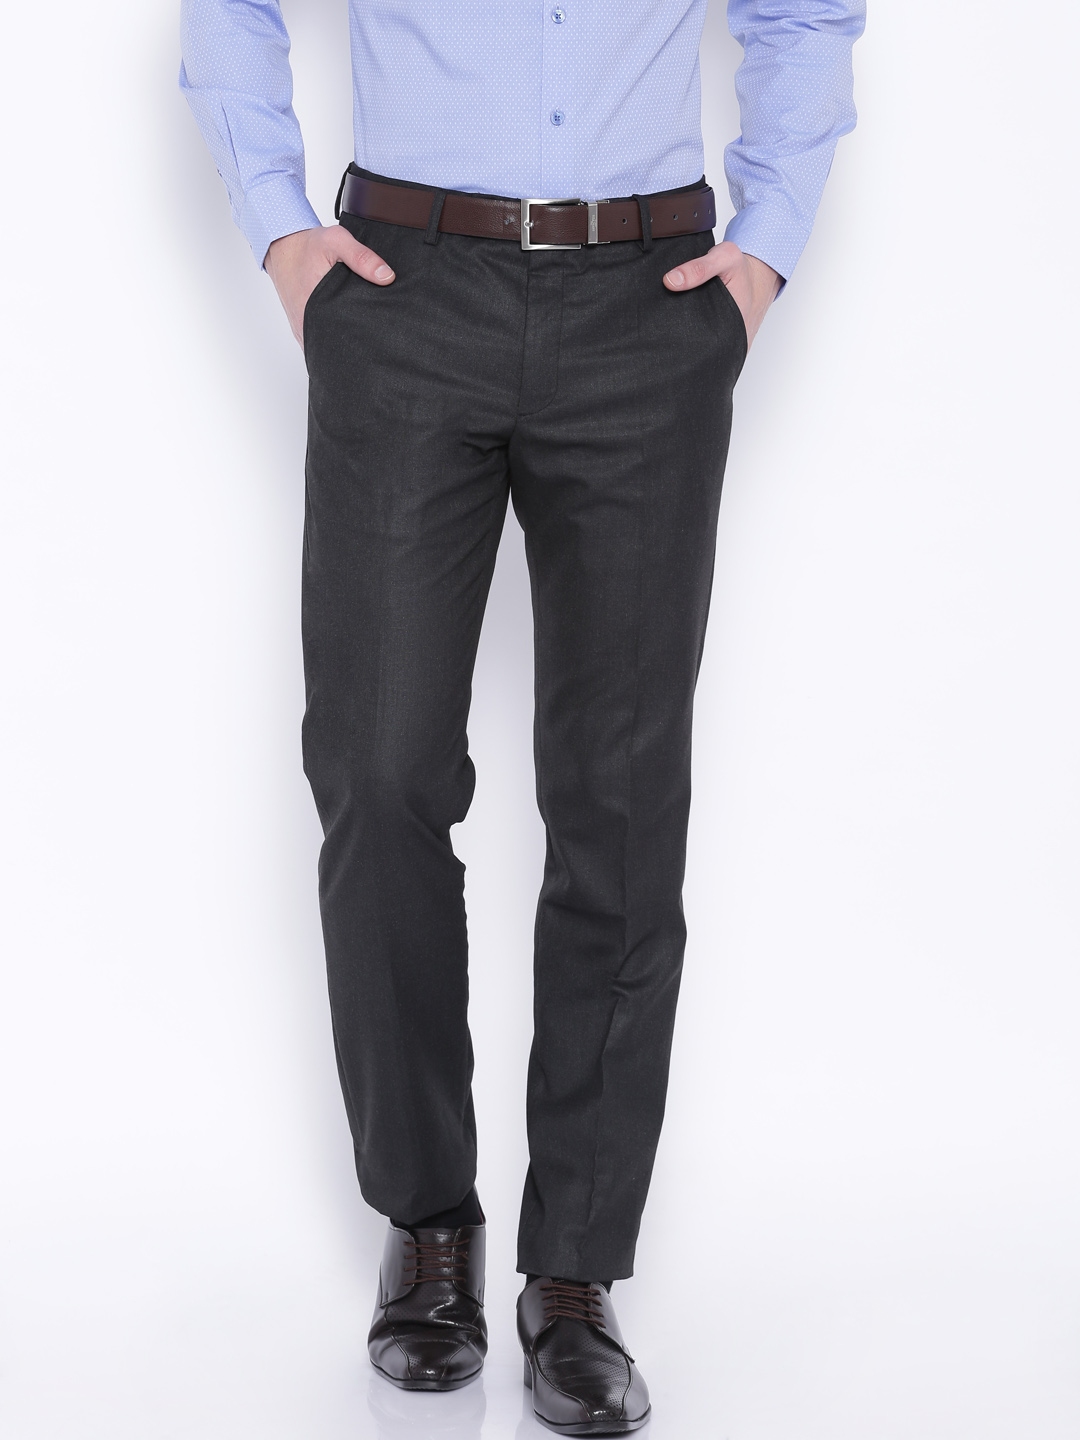 Black Coffee Slim Fit Men Grey Trousers  Buy Black Coffee Slim Fit Men  Grey Trousers Online at Best Prices in India  Flipkartcom